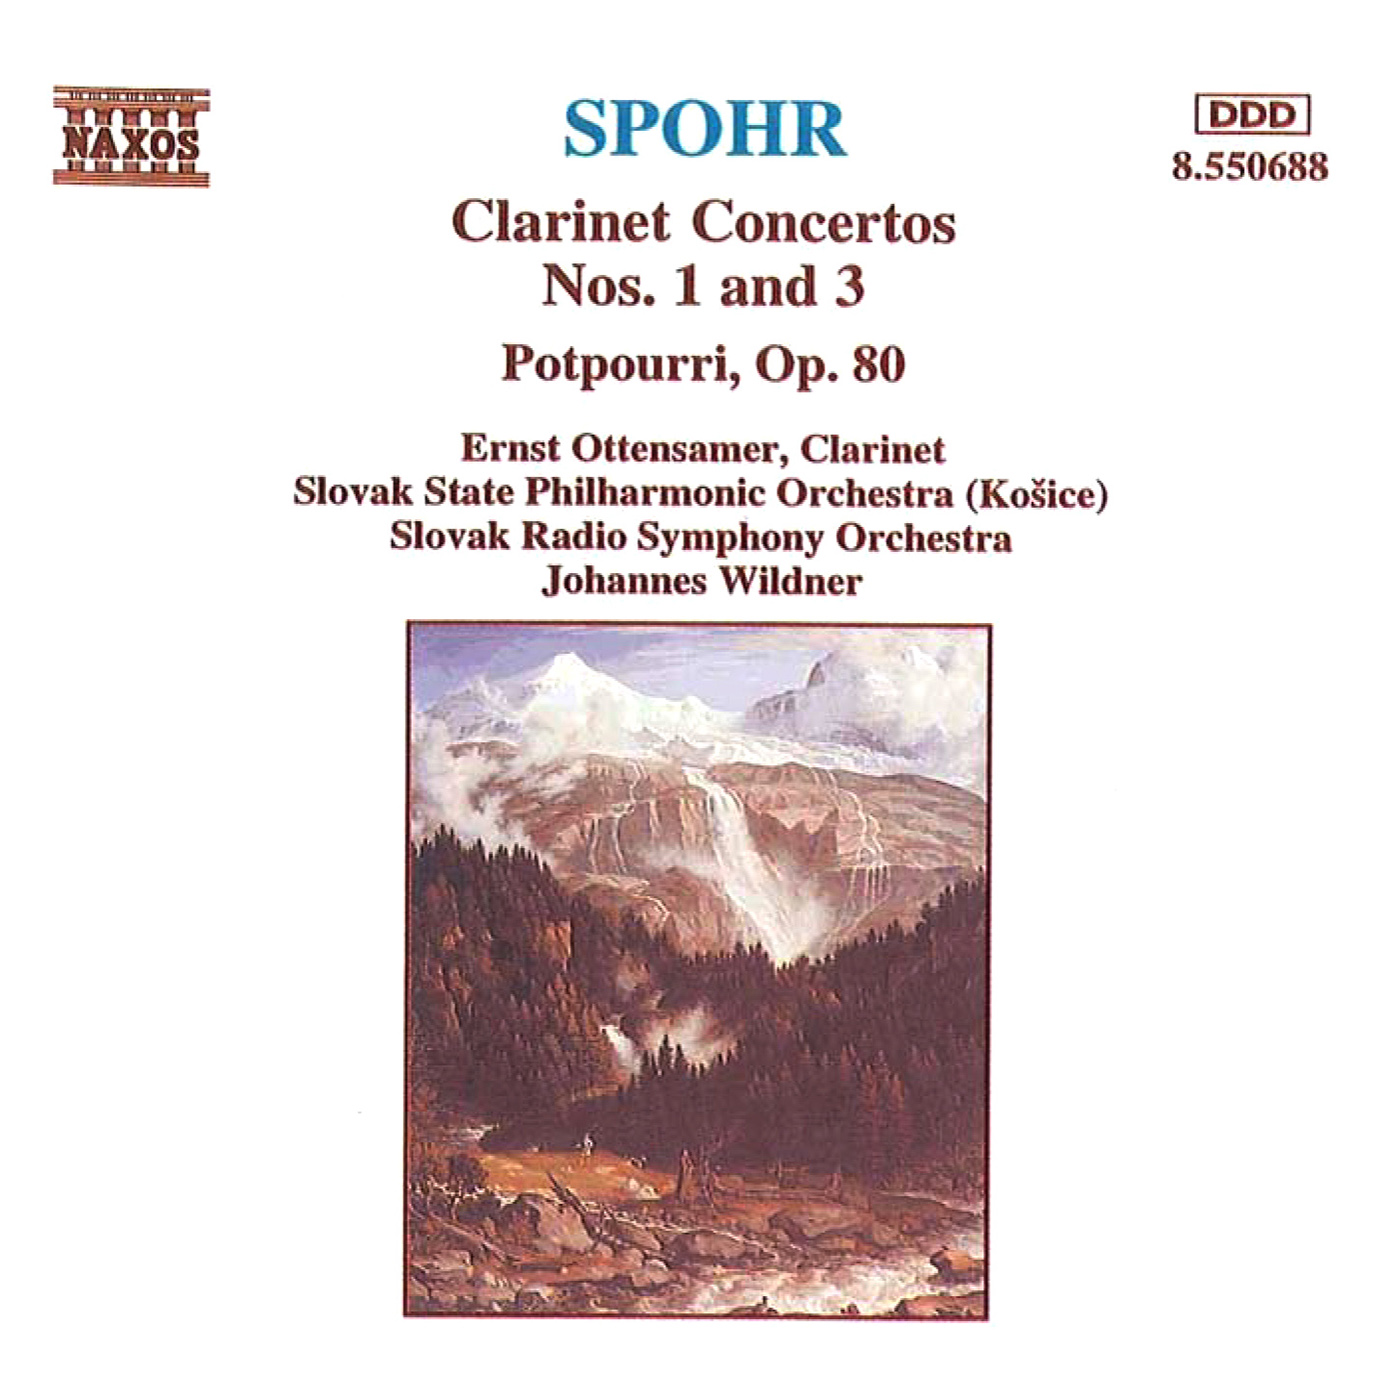 Clarinet Concerto No. 1 in C Minor, Op. 26:I. Adagio - Allegro